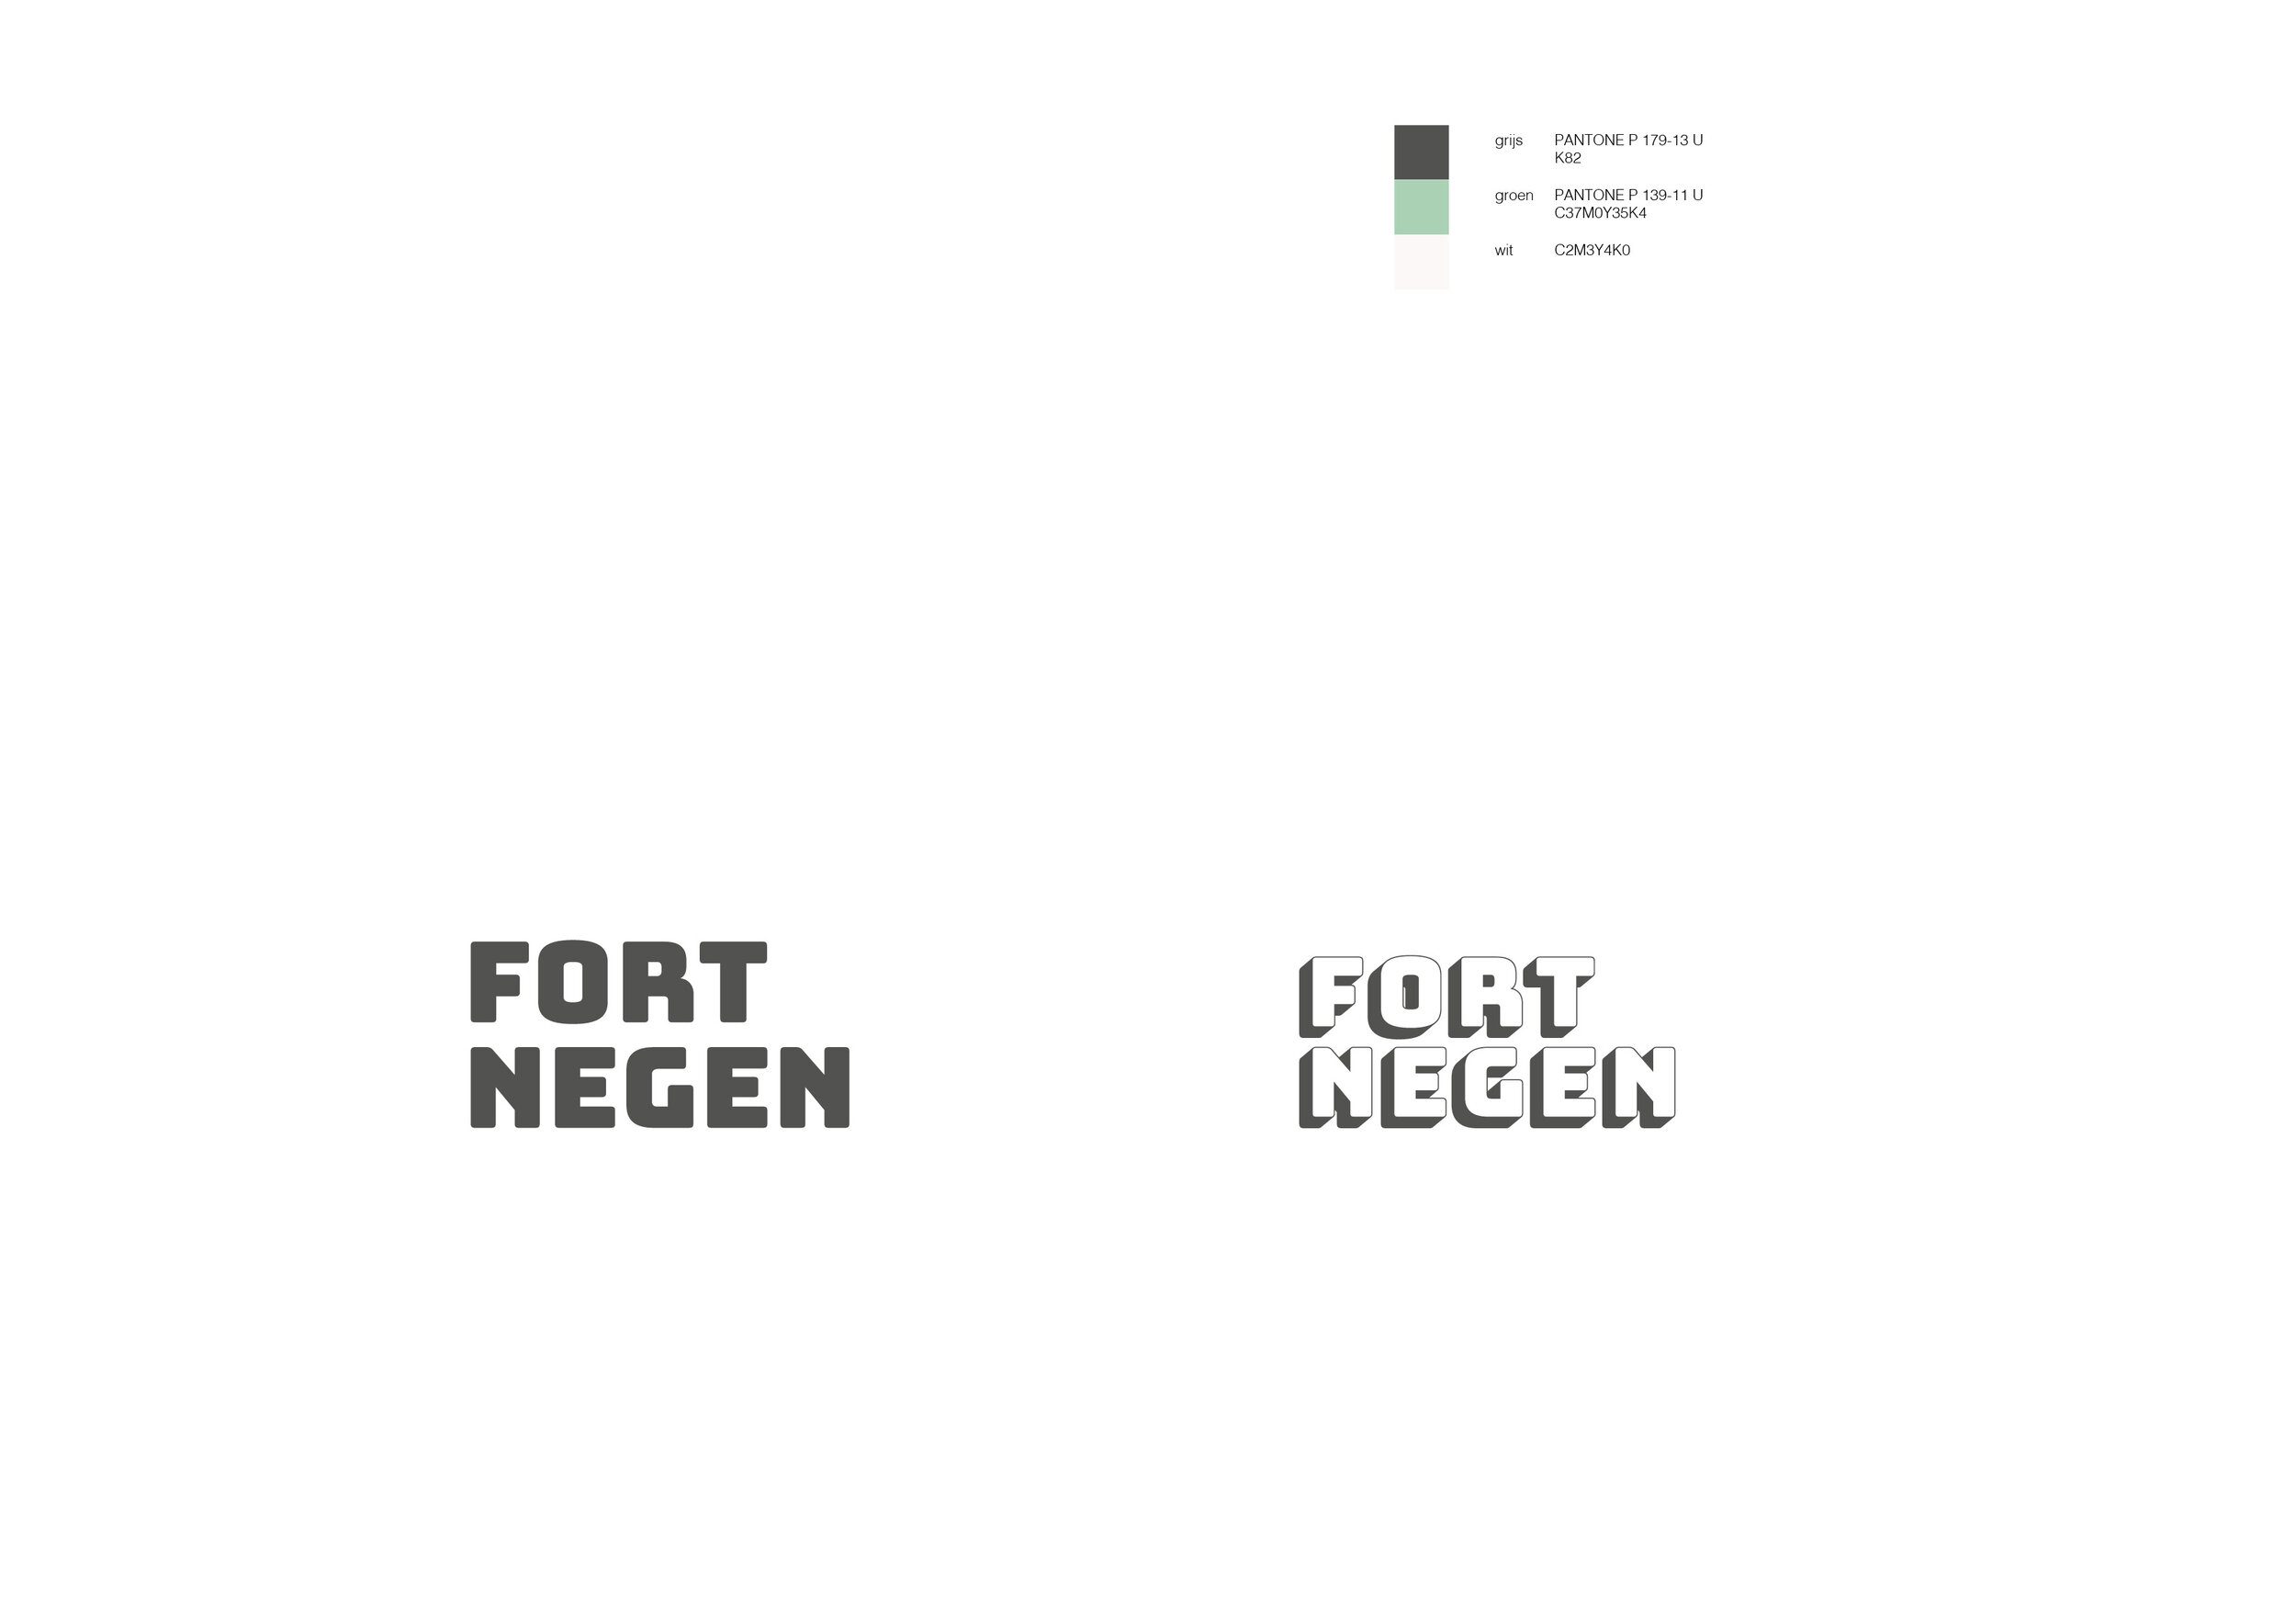 Fort Negen_Brand Identity_IVA2D3D_jpg10.jpg